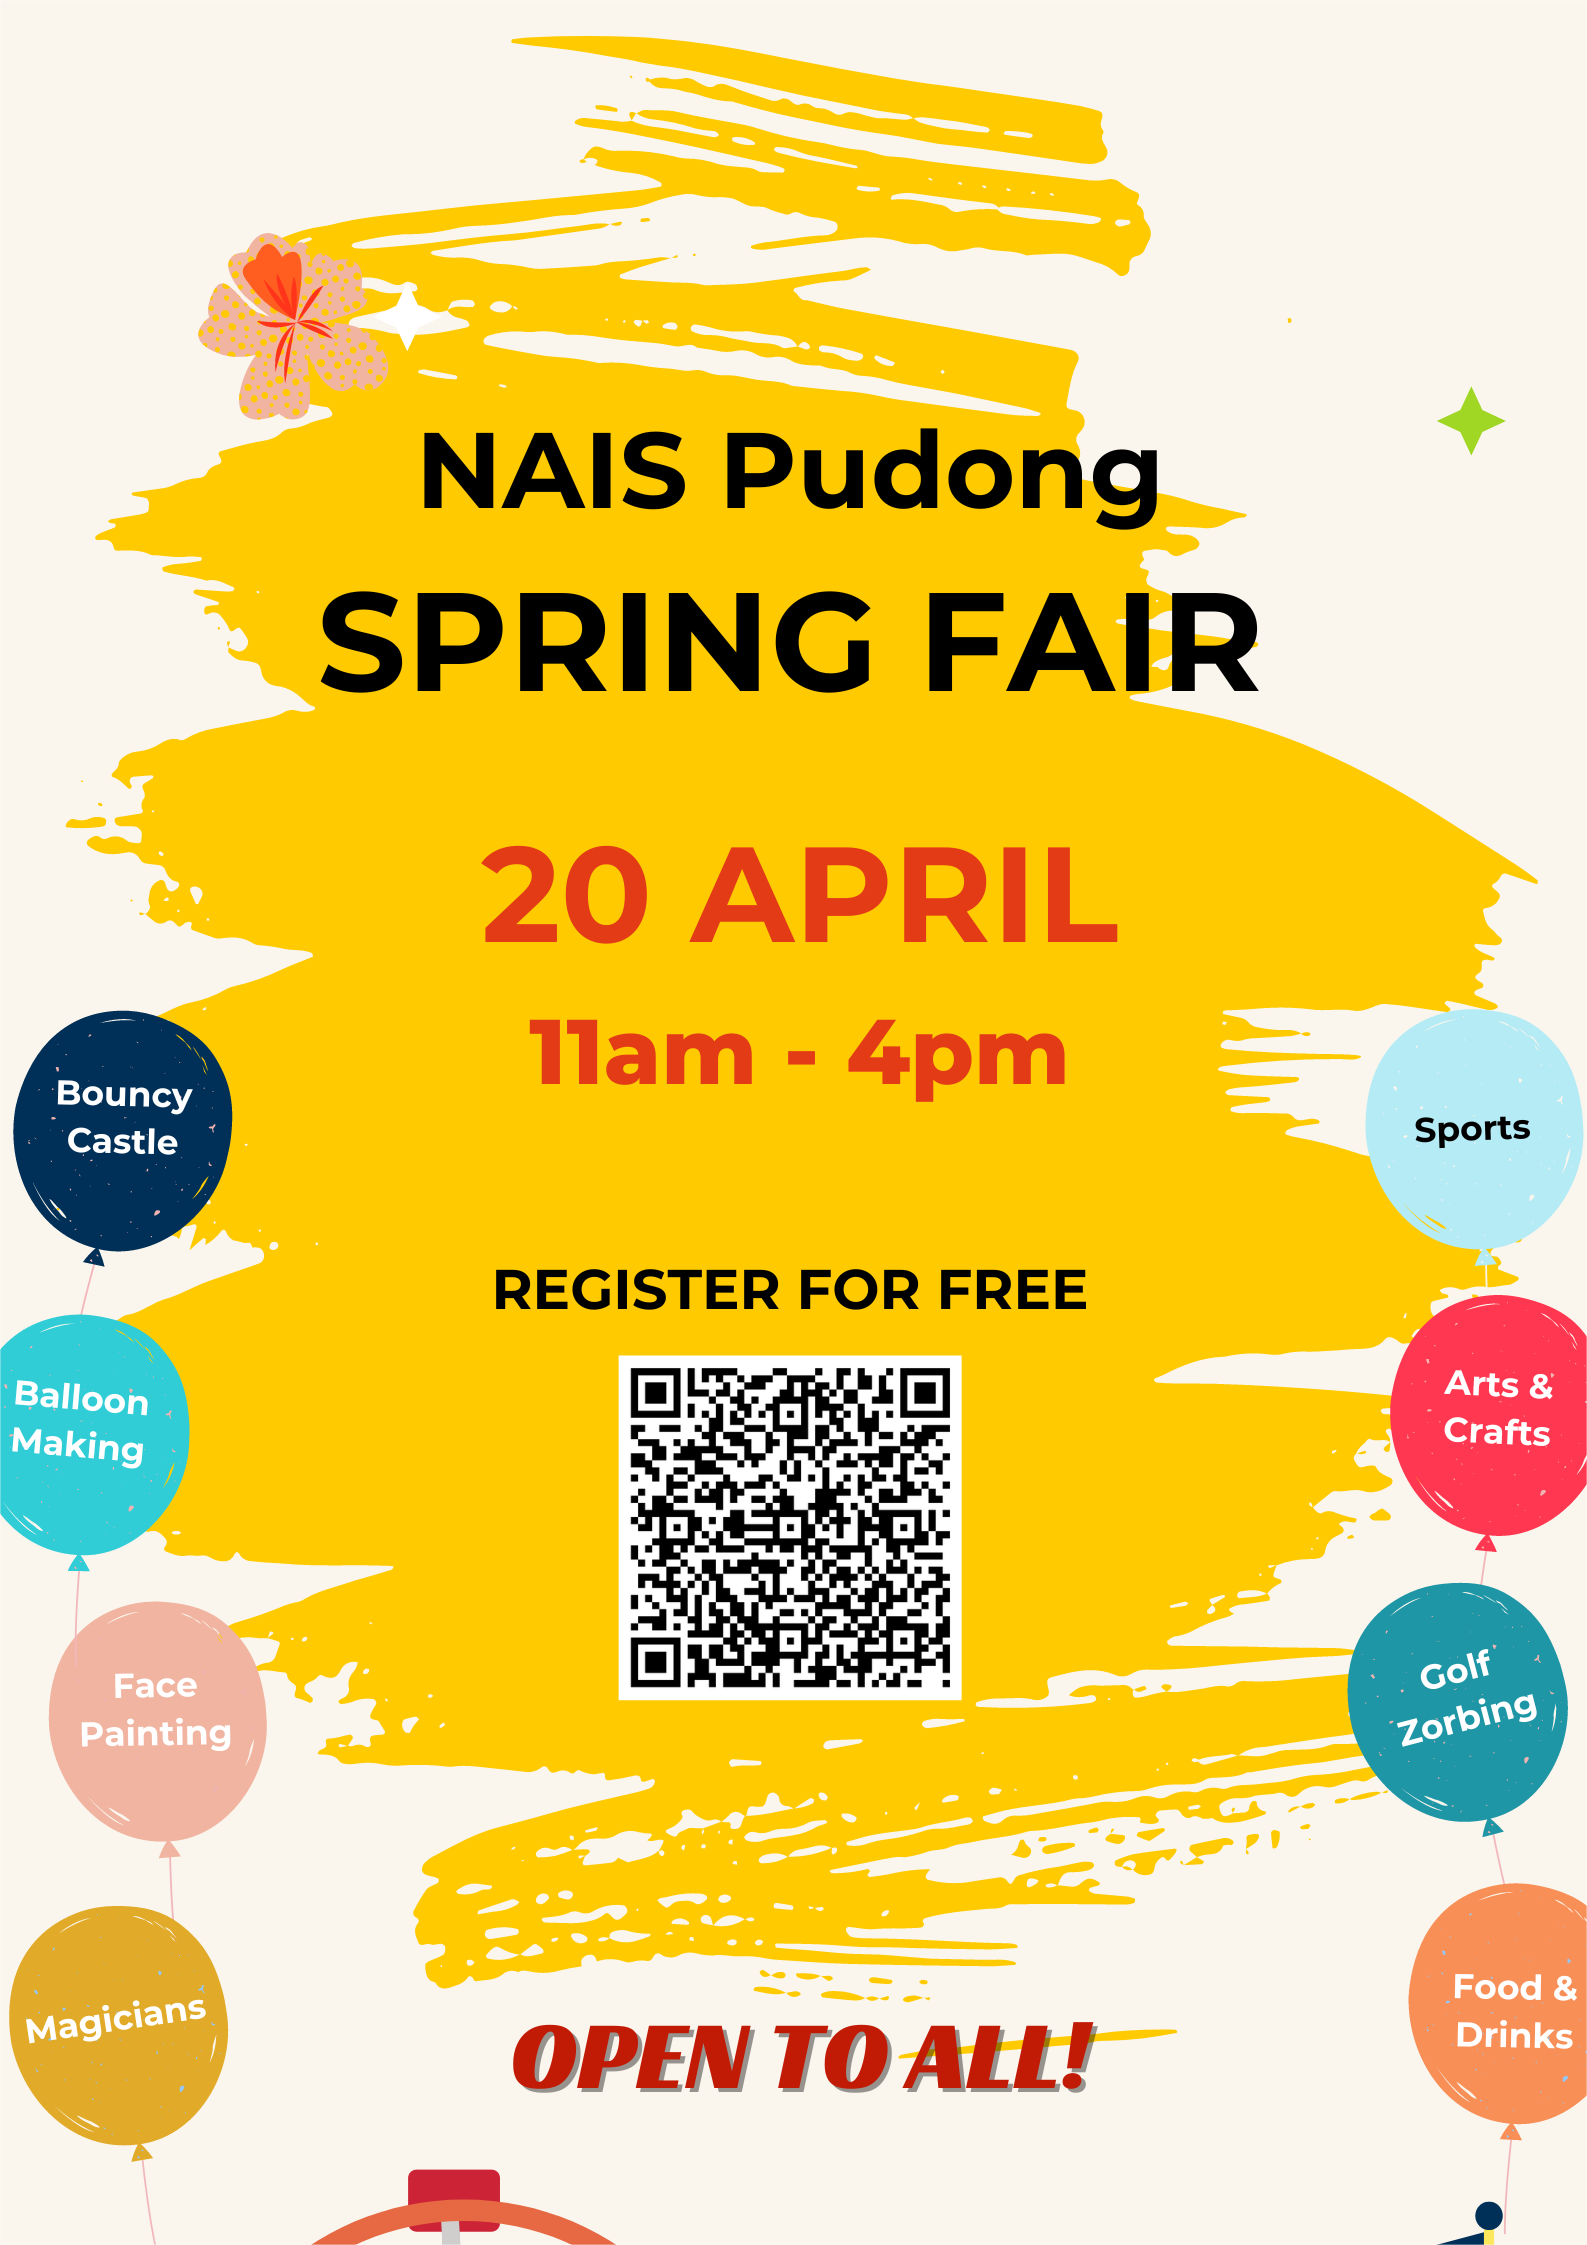 NAIS Pudong Spring Fair